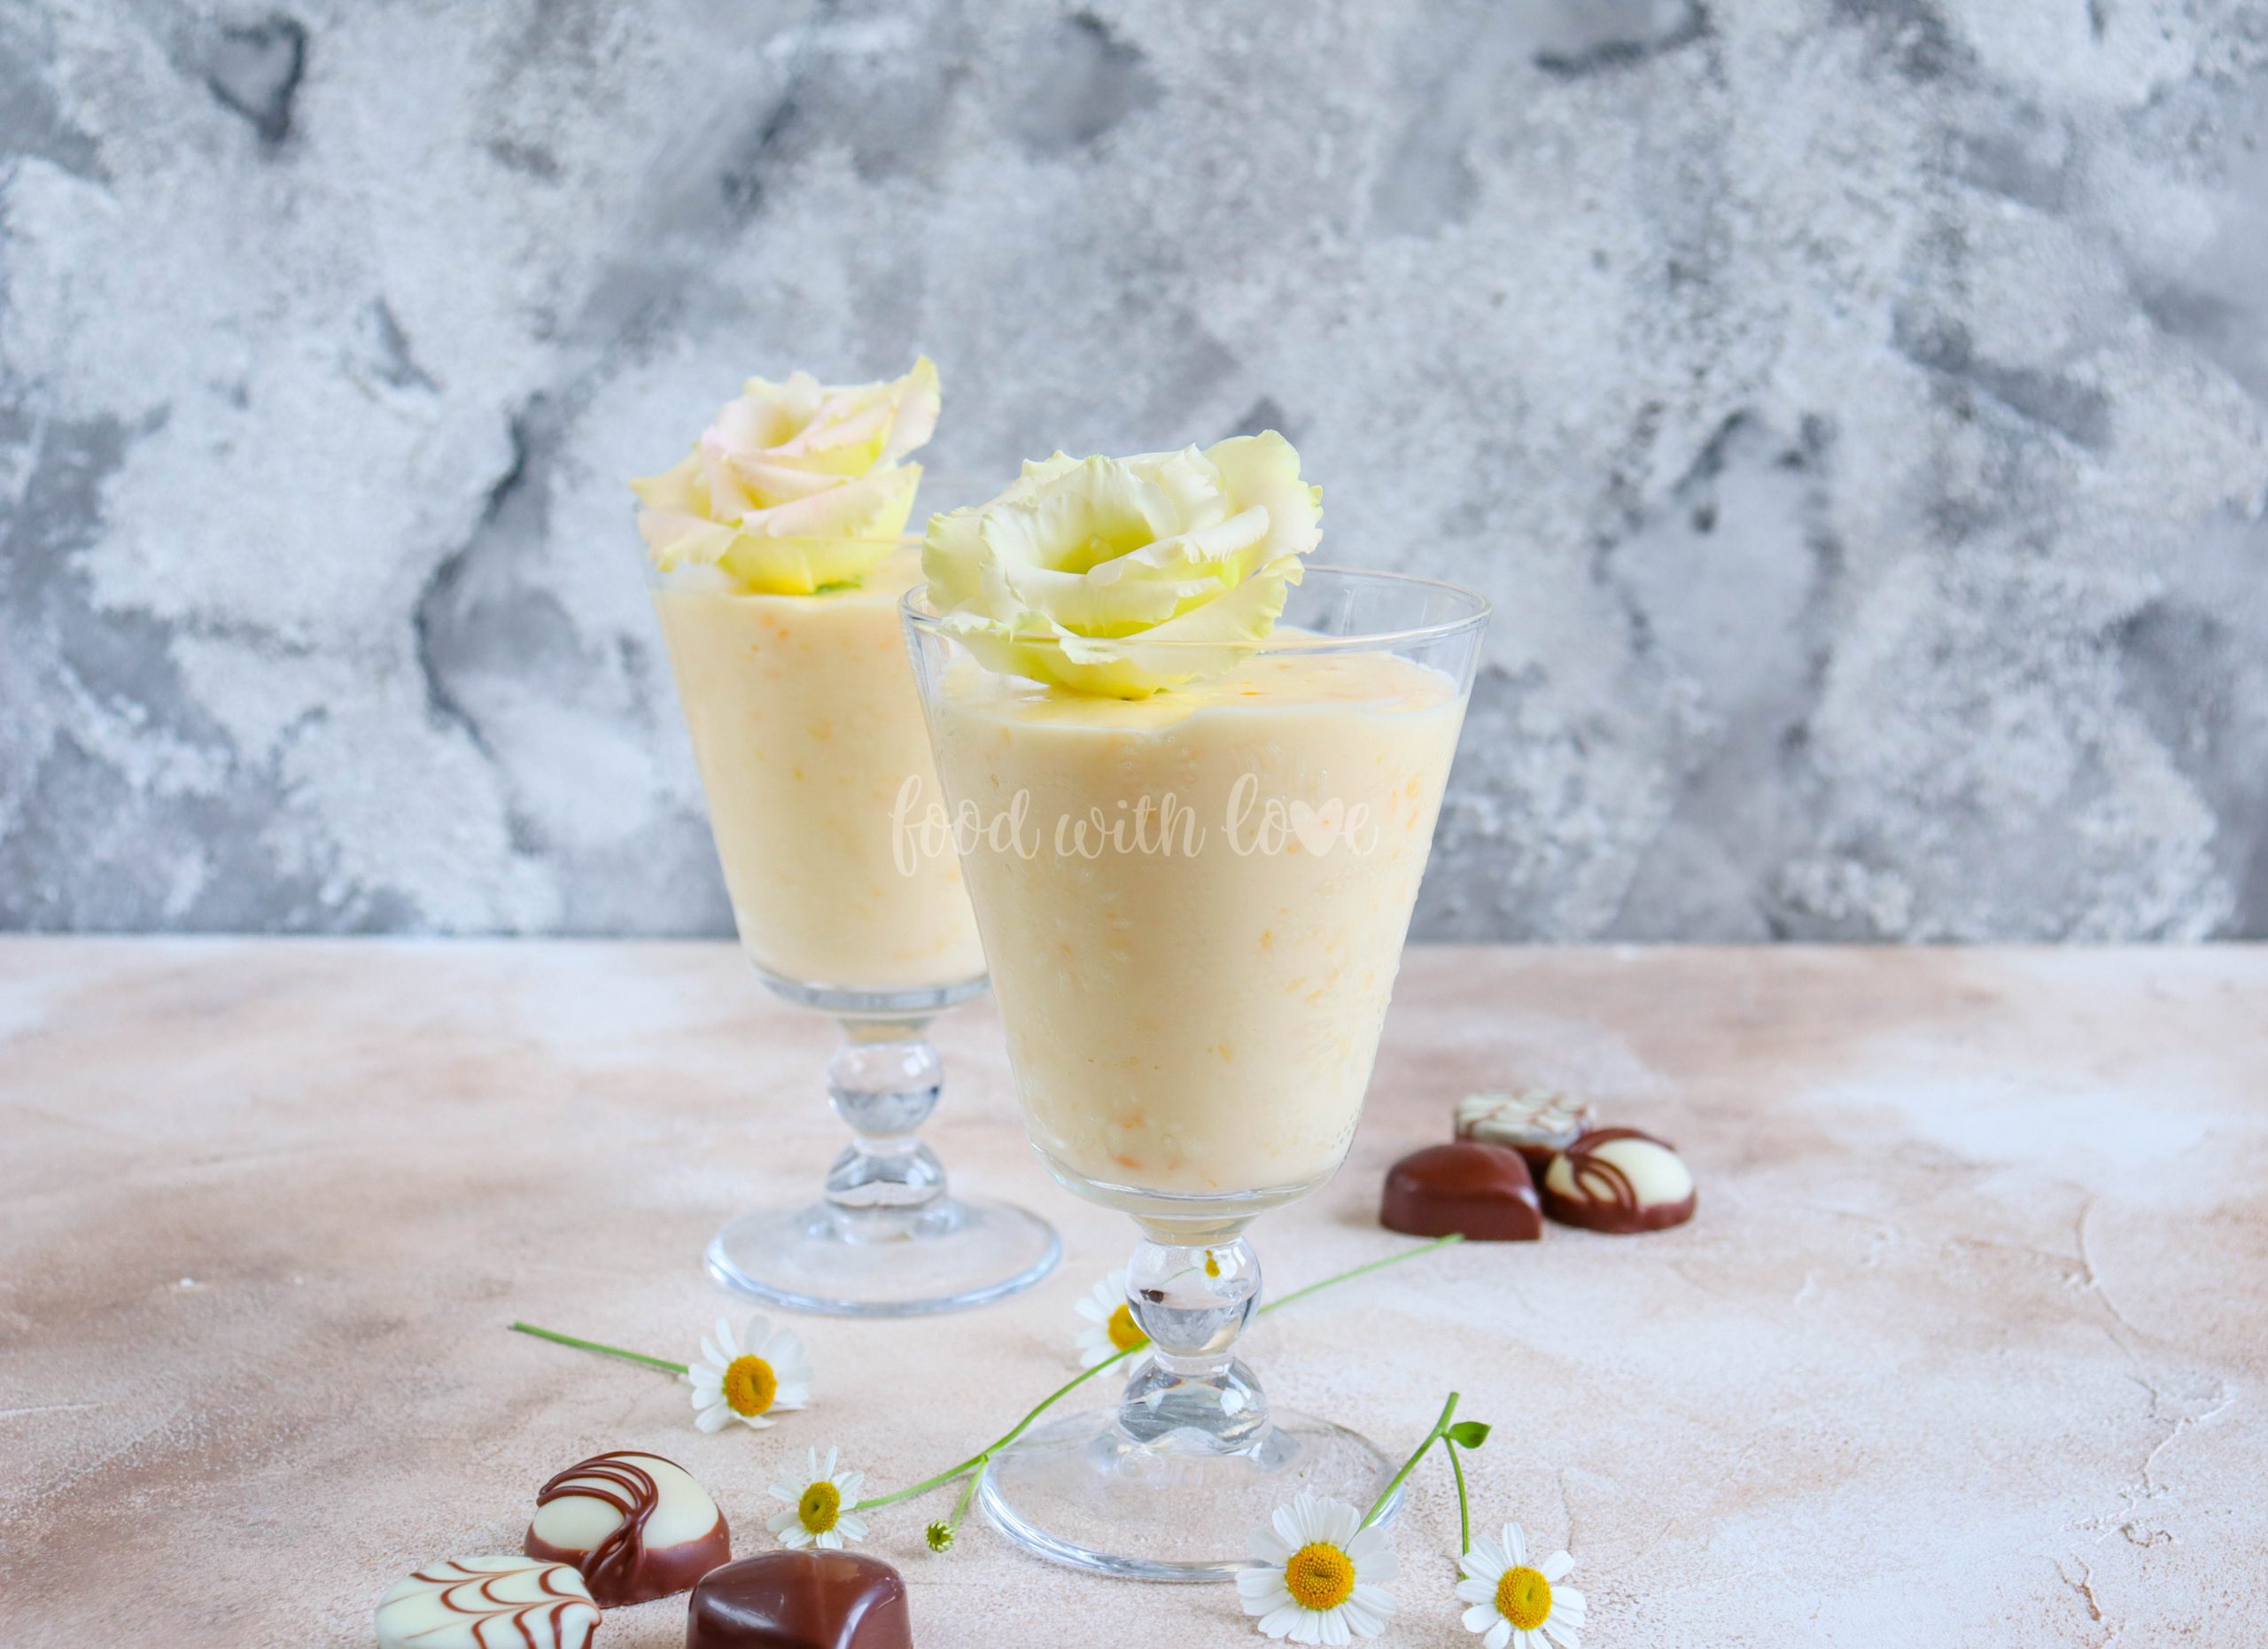 Vanille-Mandarinen-Creme – Food with Love – Thermomix Rezepte mit Herz